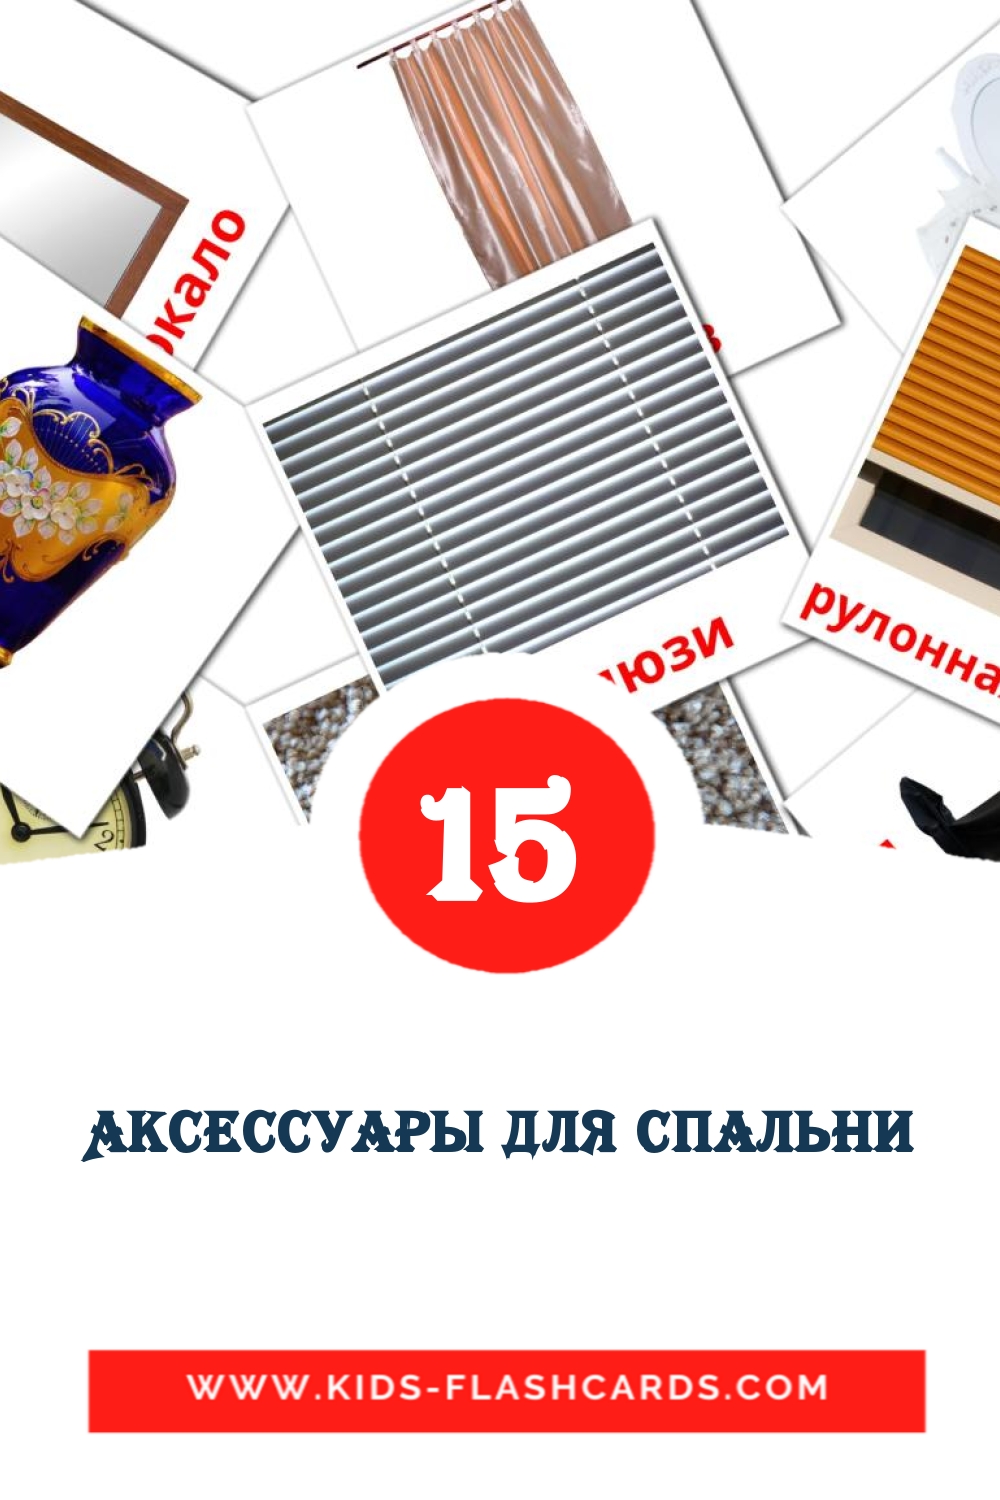 Аксессуары для спальни на русском для Детского Сада (15 карточек)